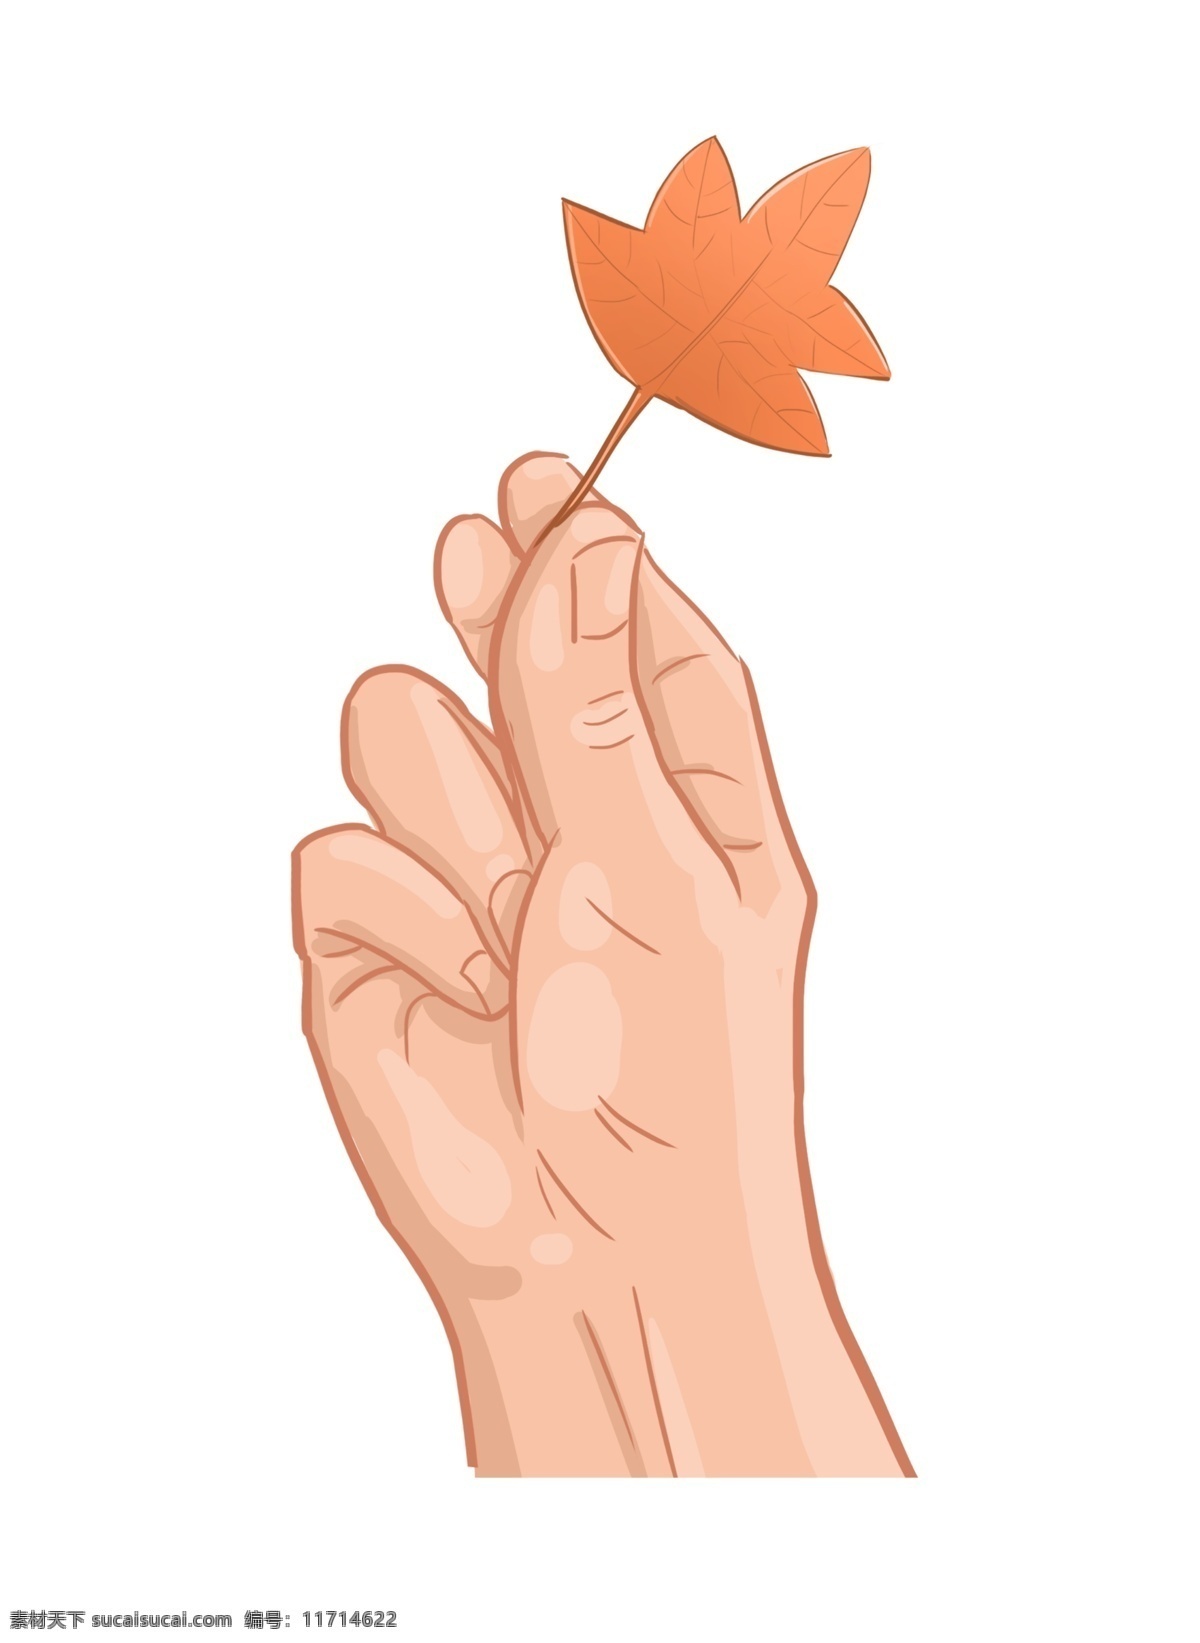 手 抓 黄色 树叶 插图 漂亮的树叶 黄色树叶 秋季树叶 手抓树叶 一只手 植物树叶 创意卡通 图案插画